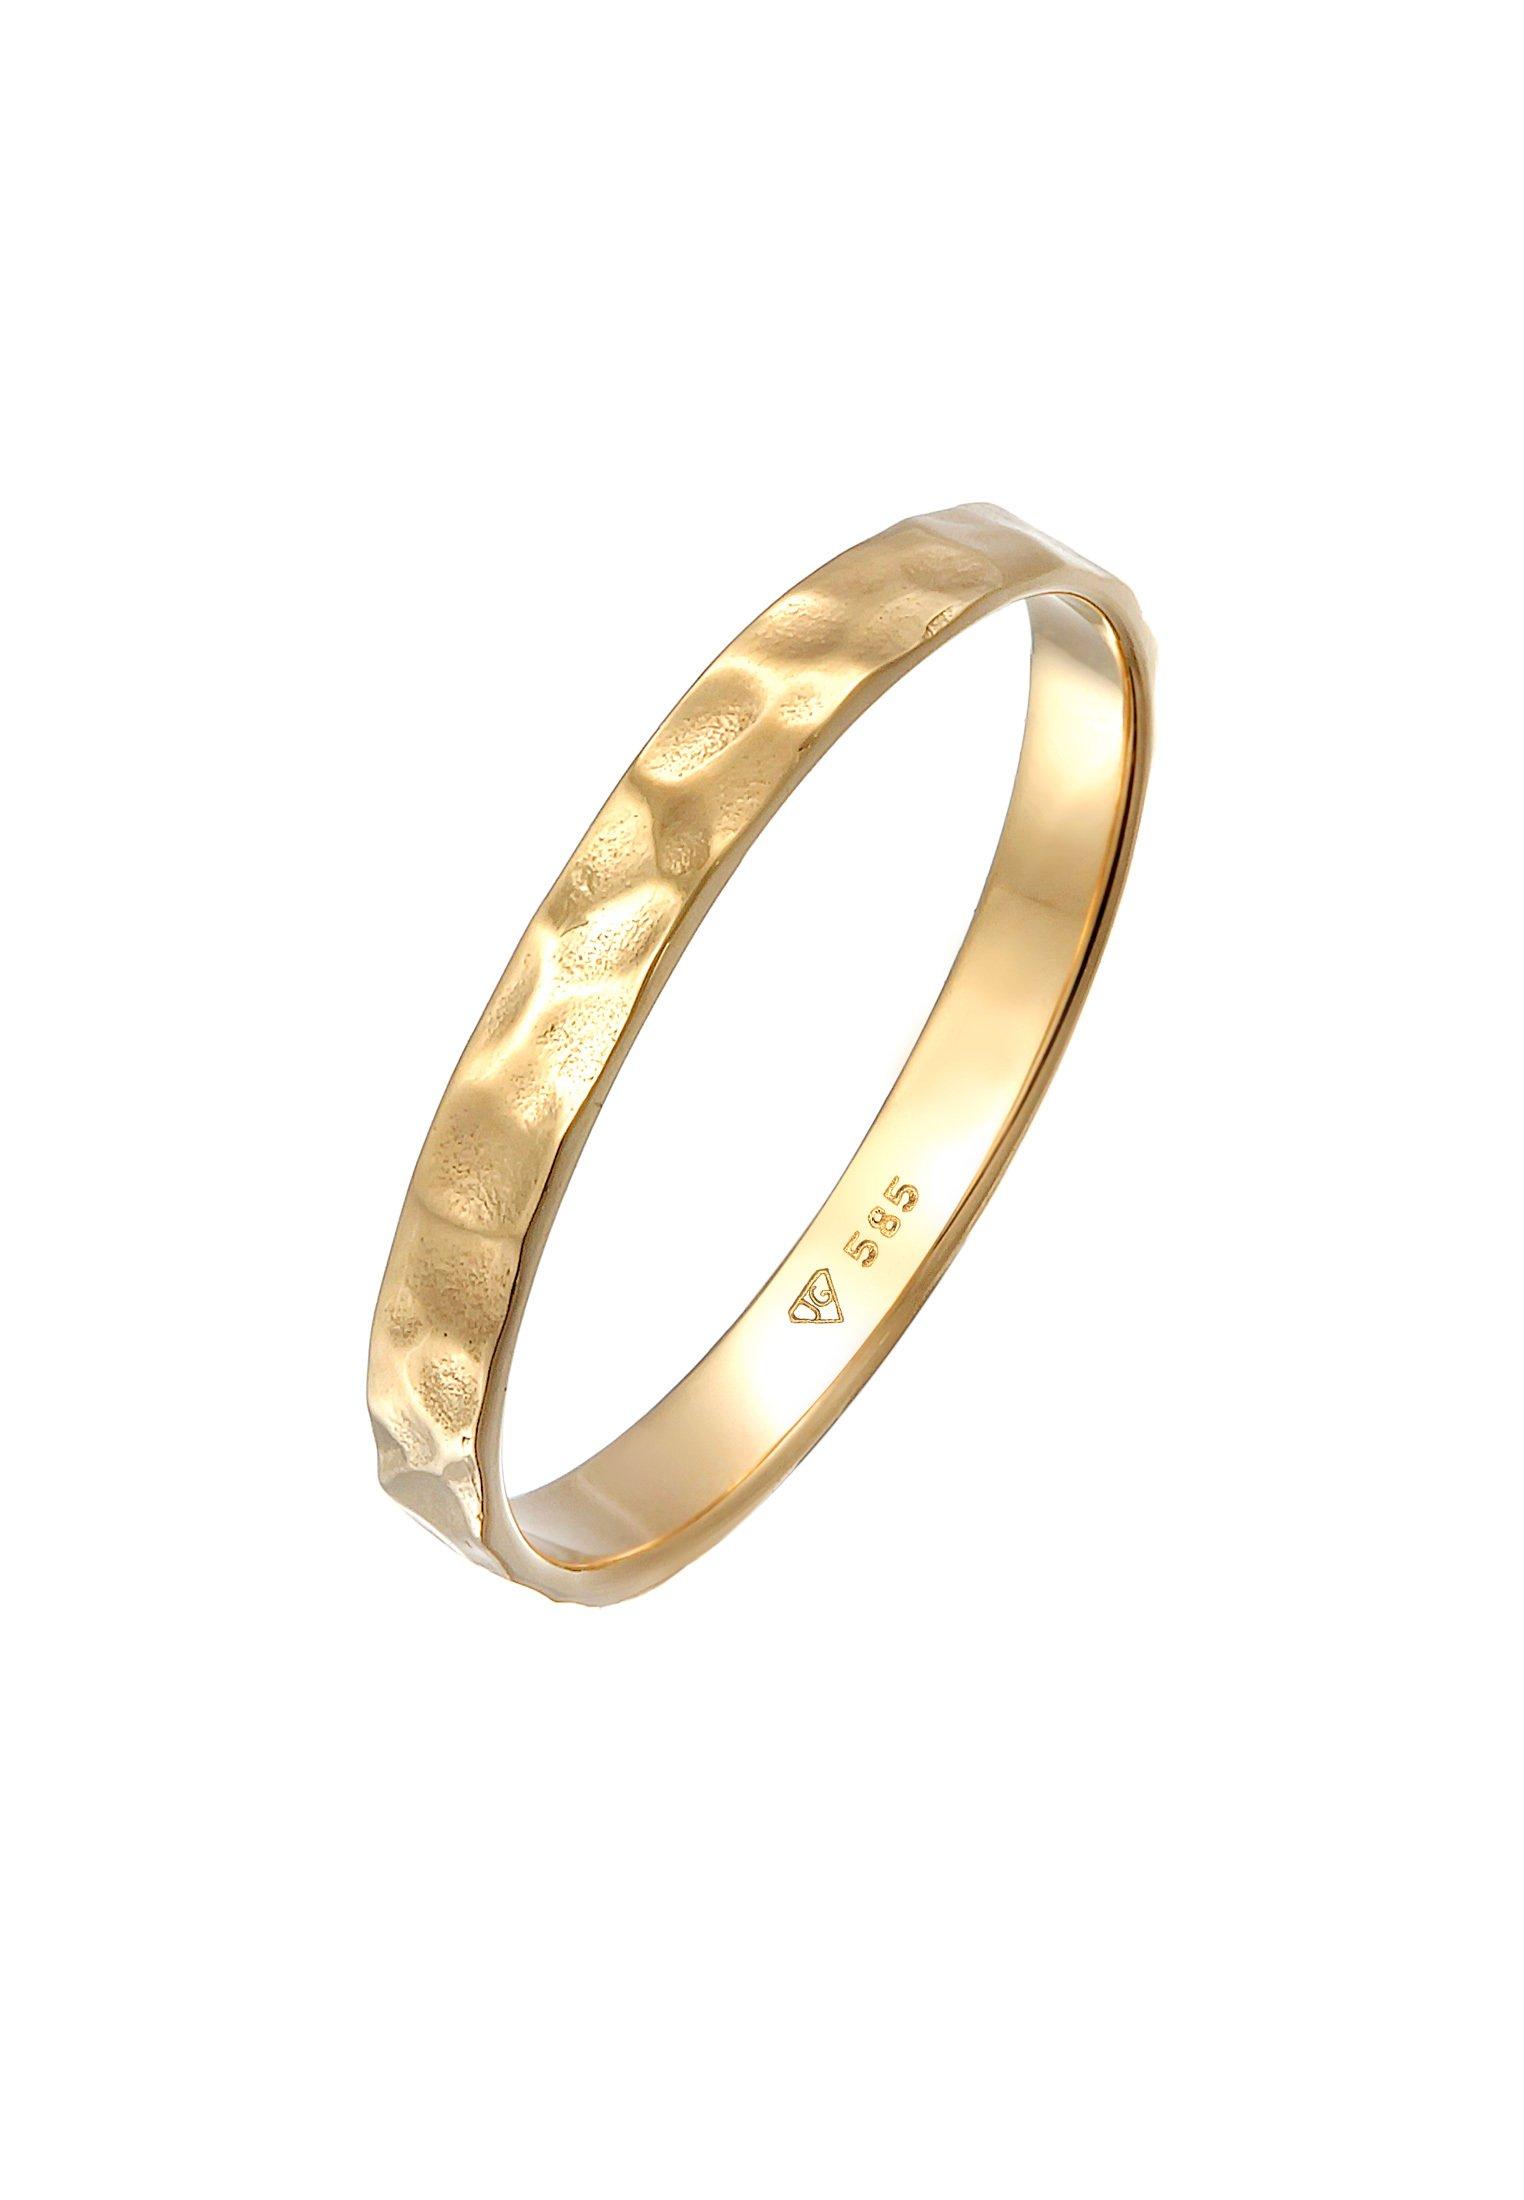 Ring Bandring Freundschaftsring Ehering 585er Gelbgold Damen Gold 54mm von Elli